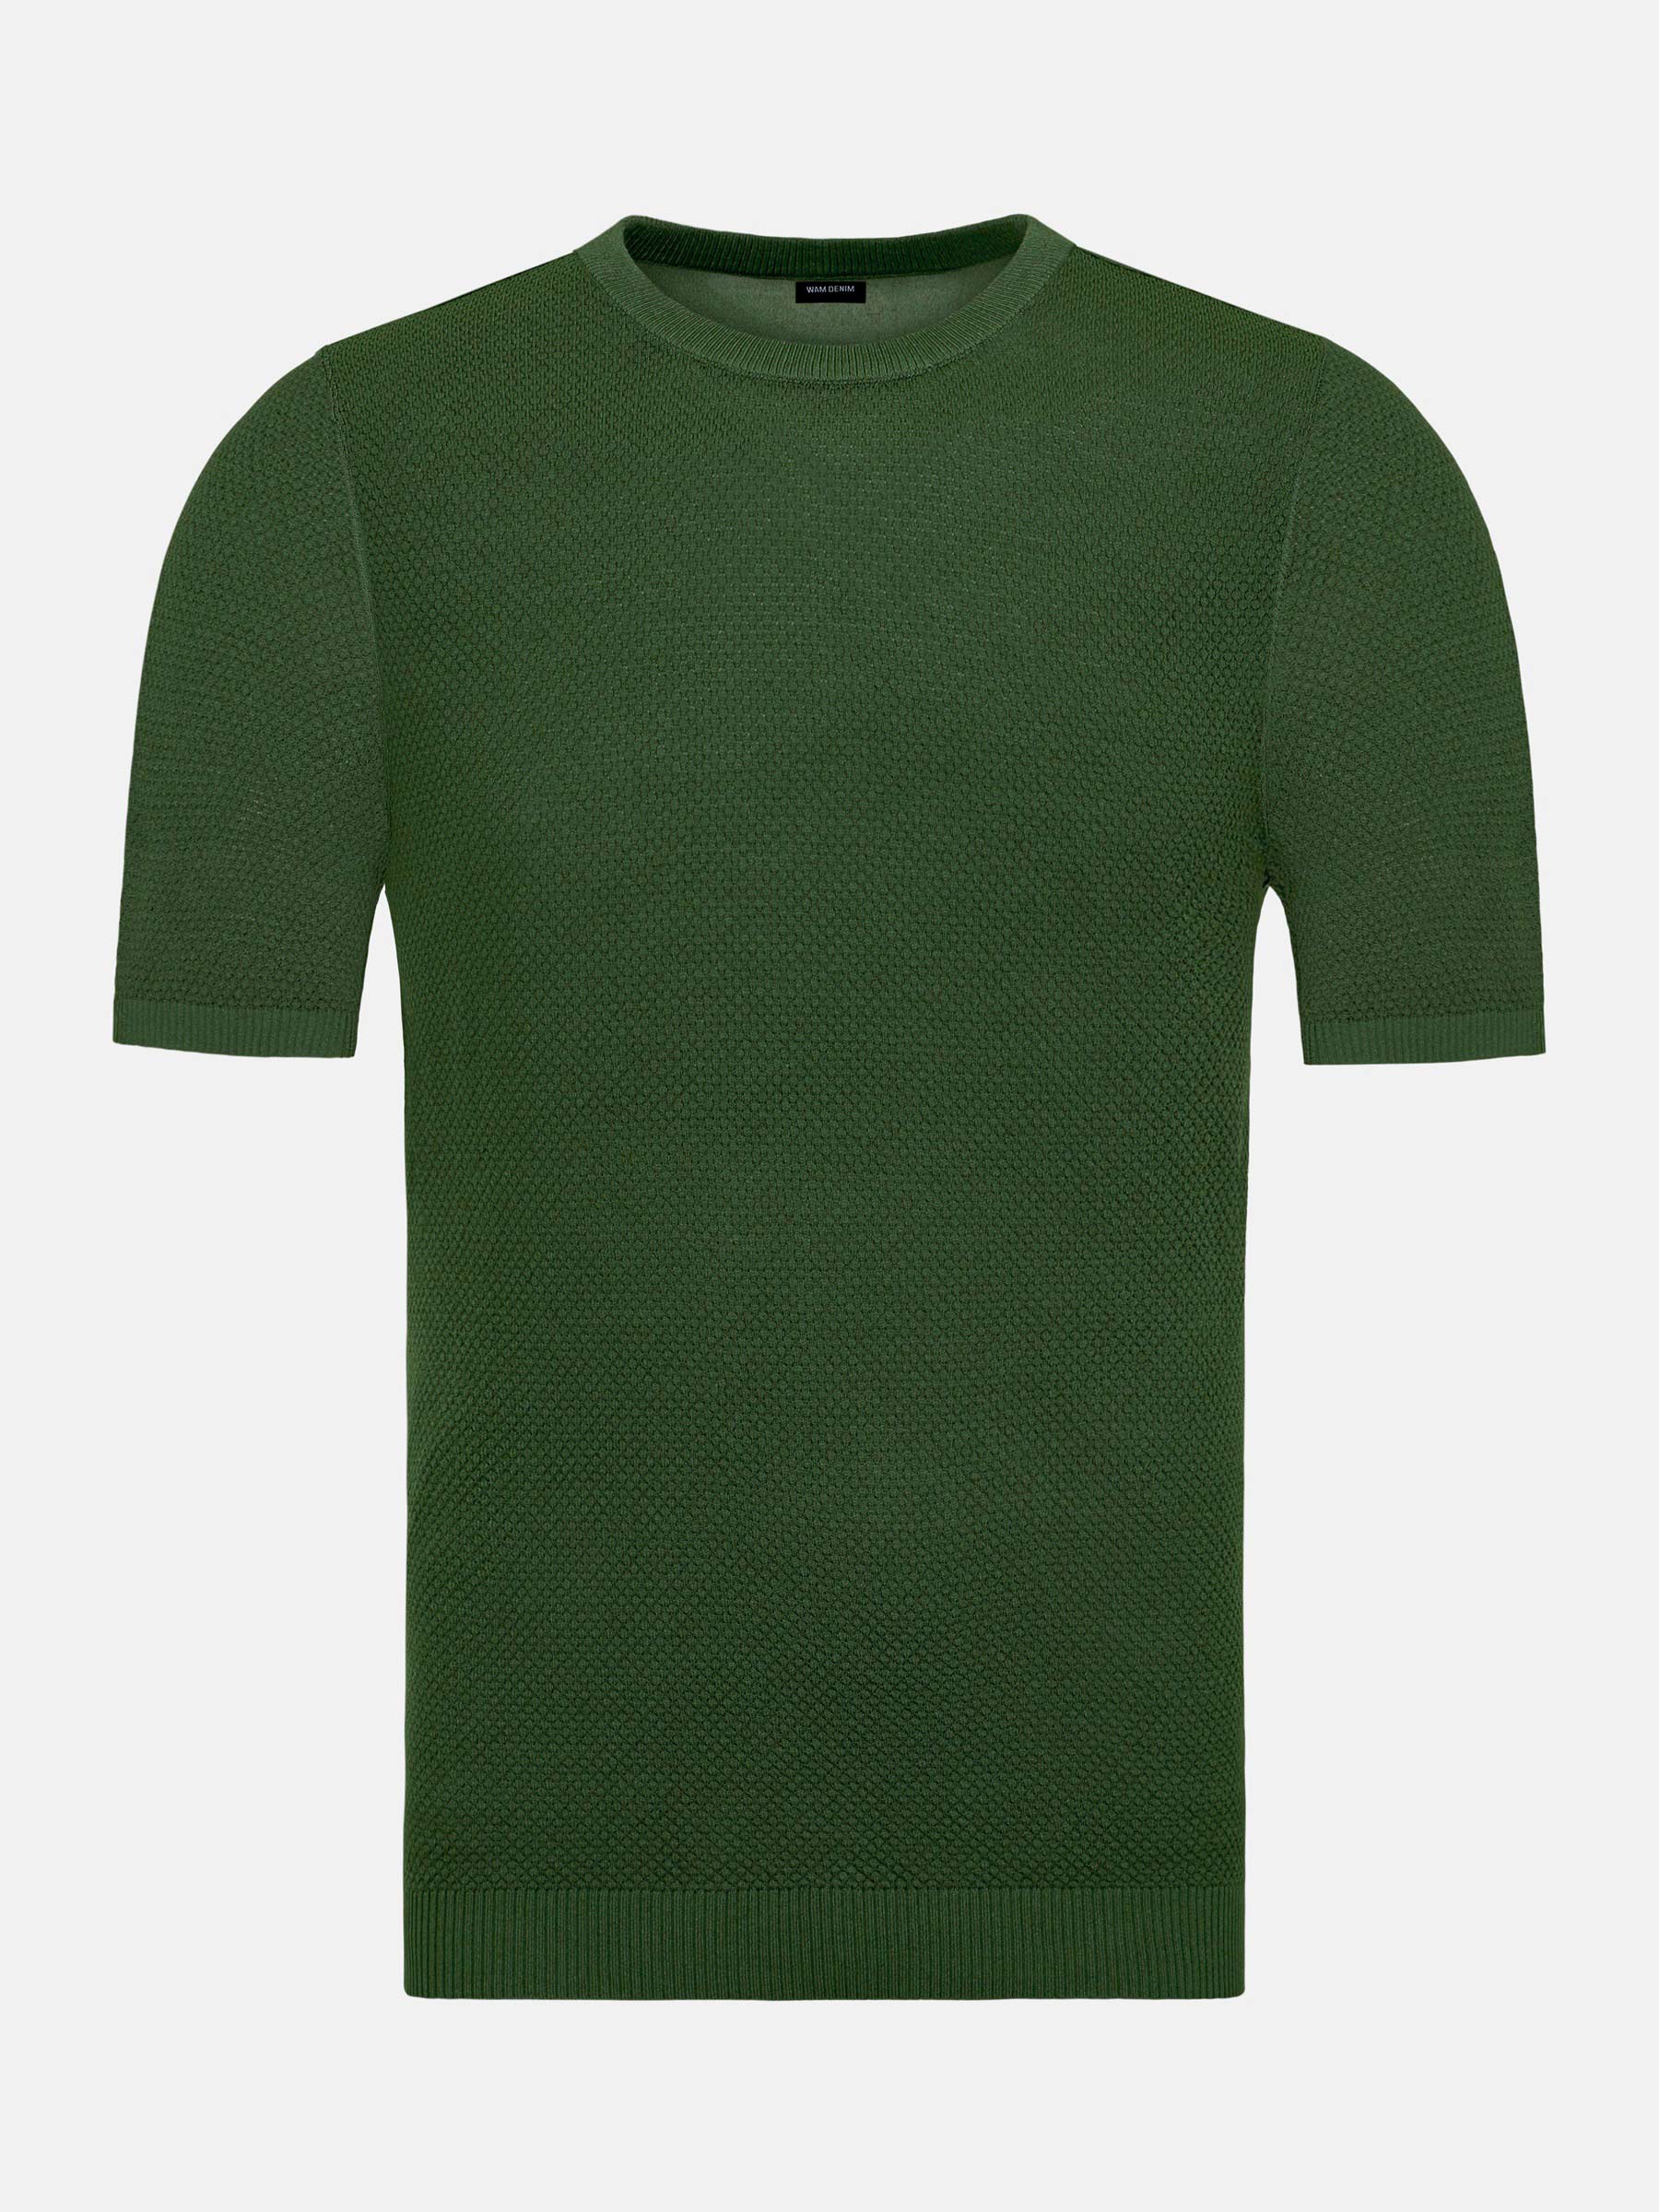 WAM Denim Lucas Pique Knit Green T-Shirt-